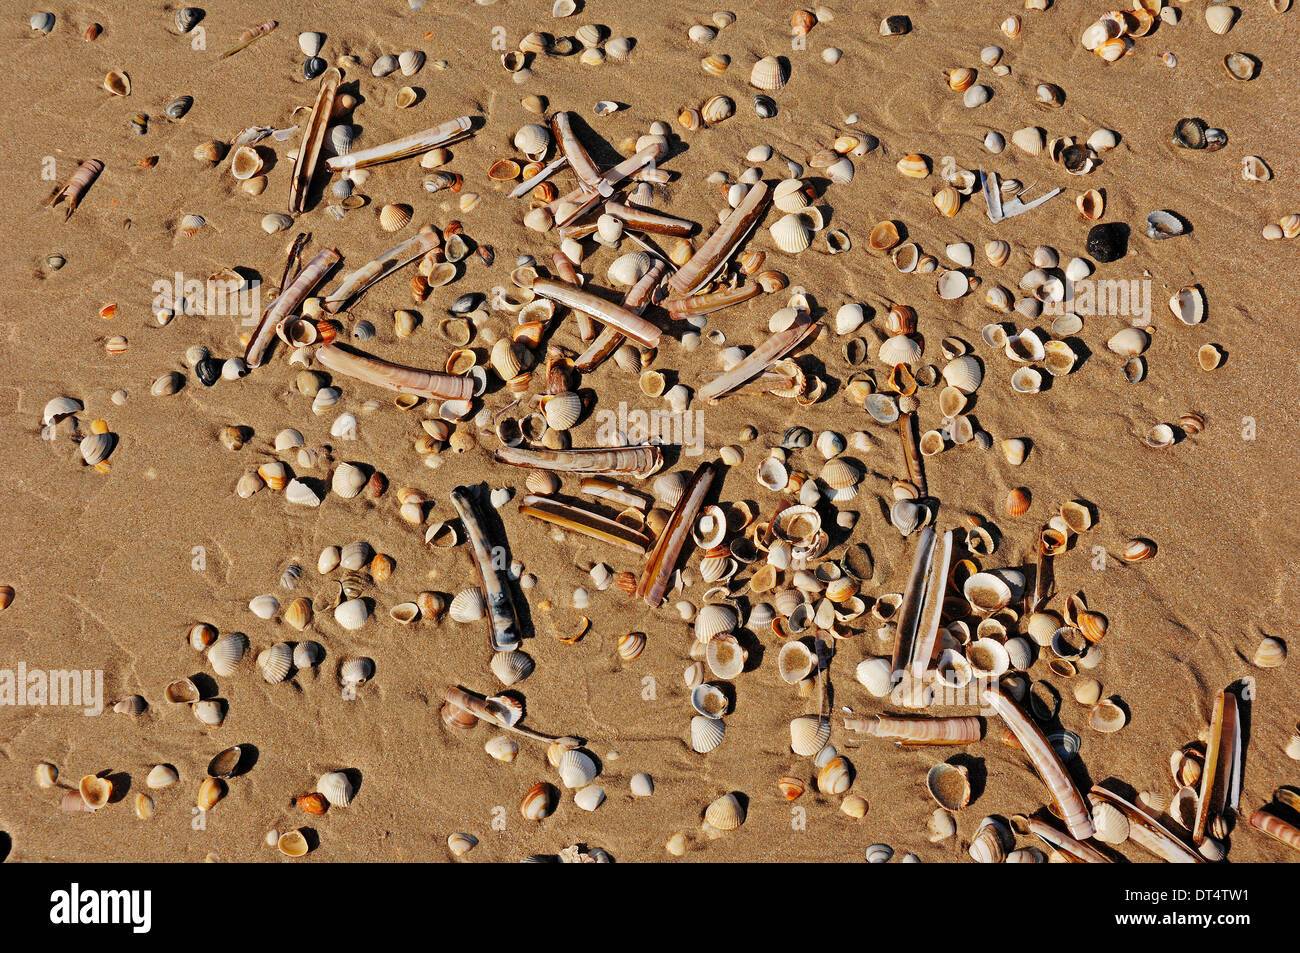 Différents types de coquilles de moules à plage, Castricum aan Zee, Pays-Bas Banque D'Images